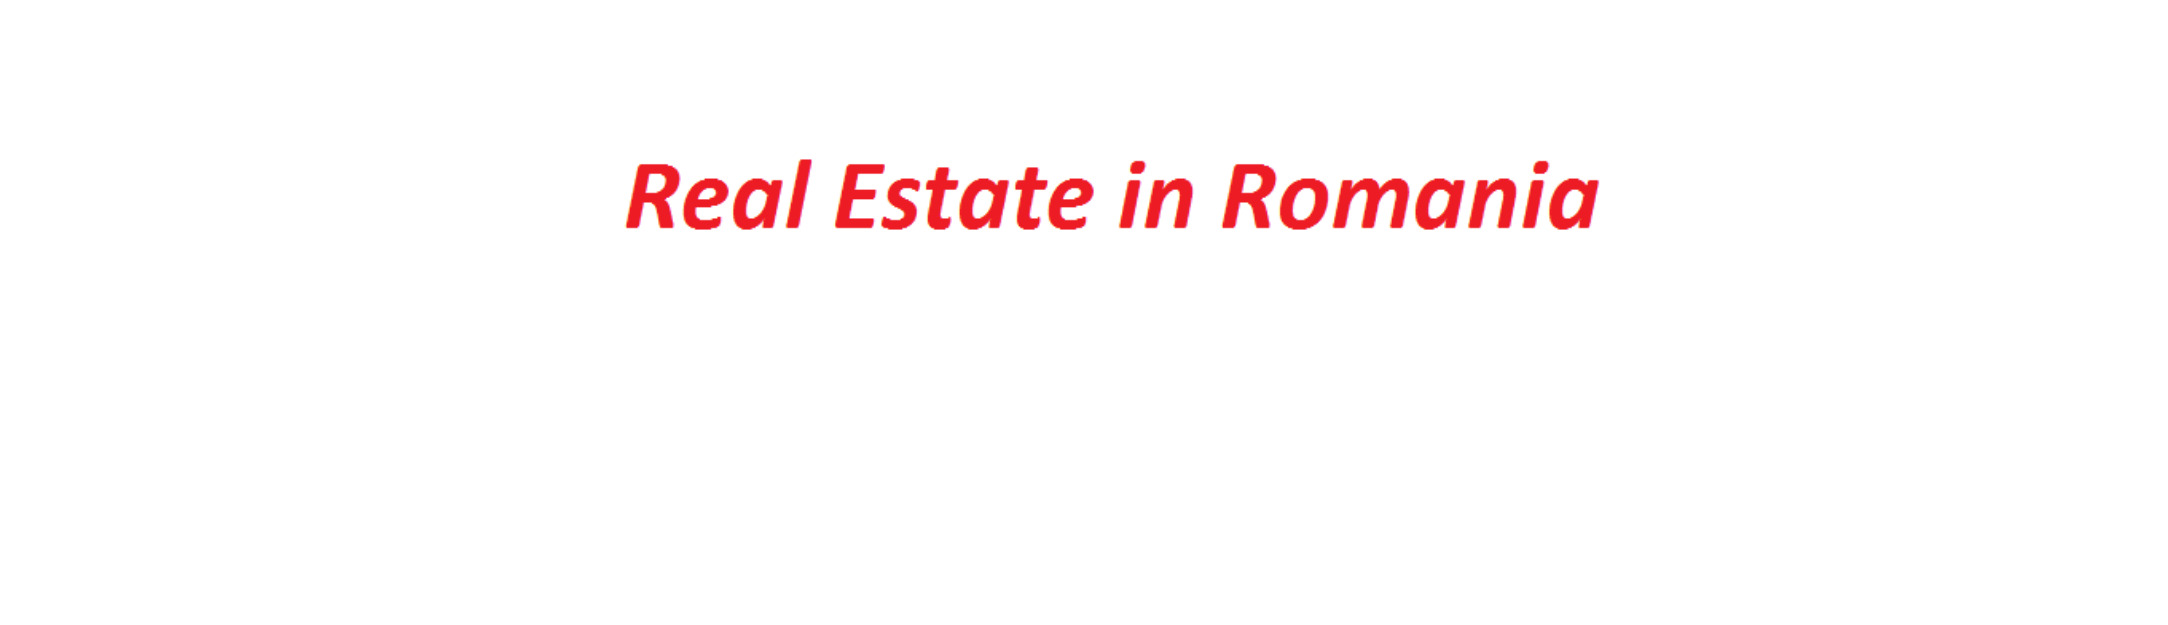 Real Estate Romania - Pret | Preturi Real Estate Romania